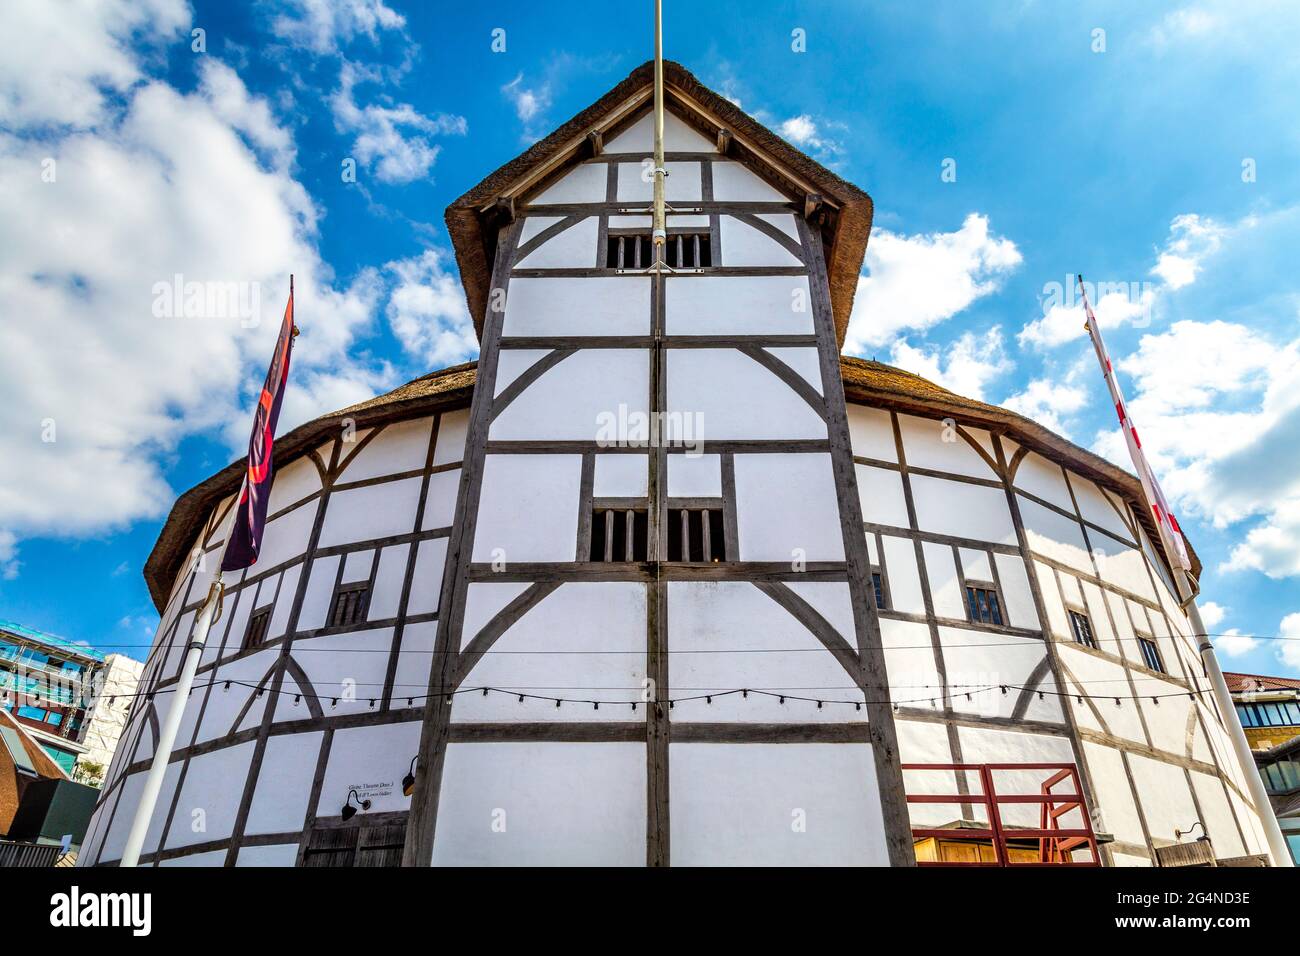 La reconstruction du Globe Theatre de Shakespeare du théâtre de Globe de l'époque élisabéthaine pour lequel William Shakespeare a écrit ses pièces, Londres, Royaume-Uni Banque D'Images